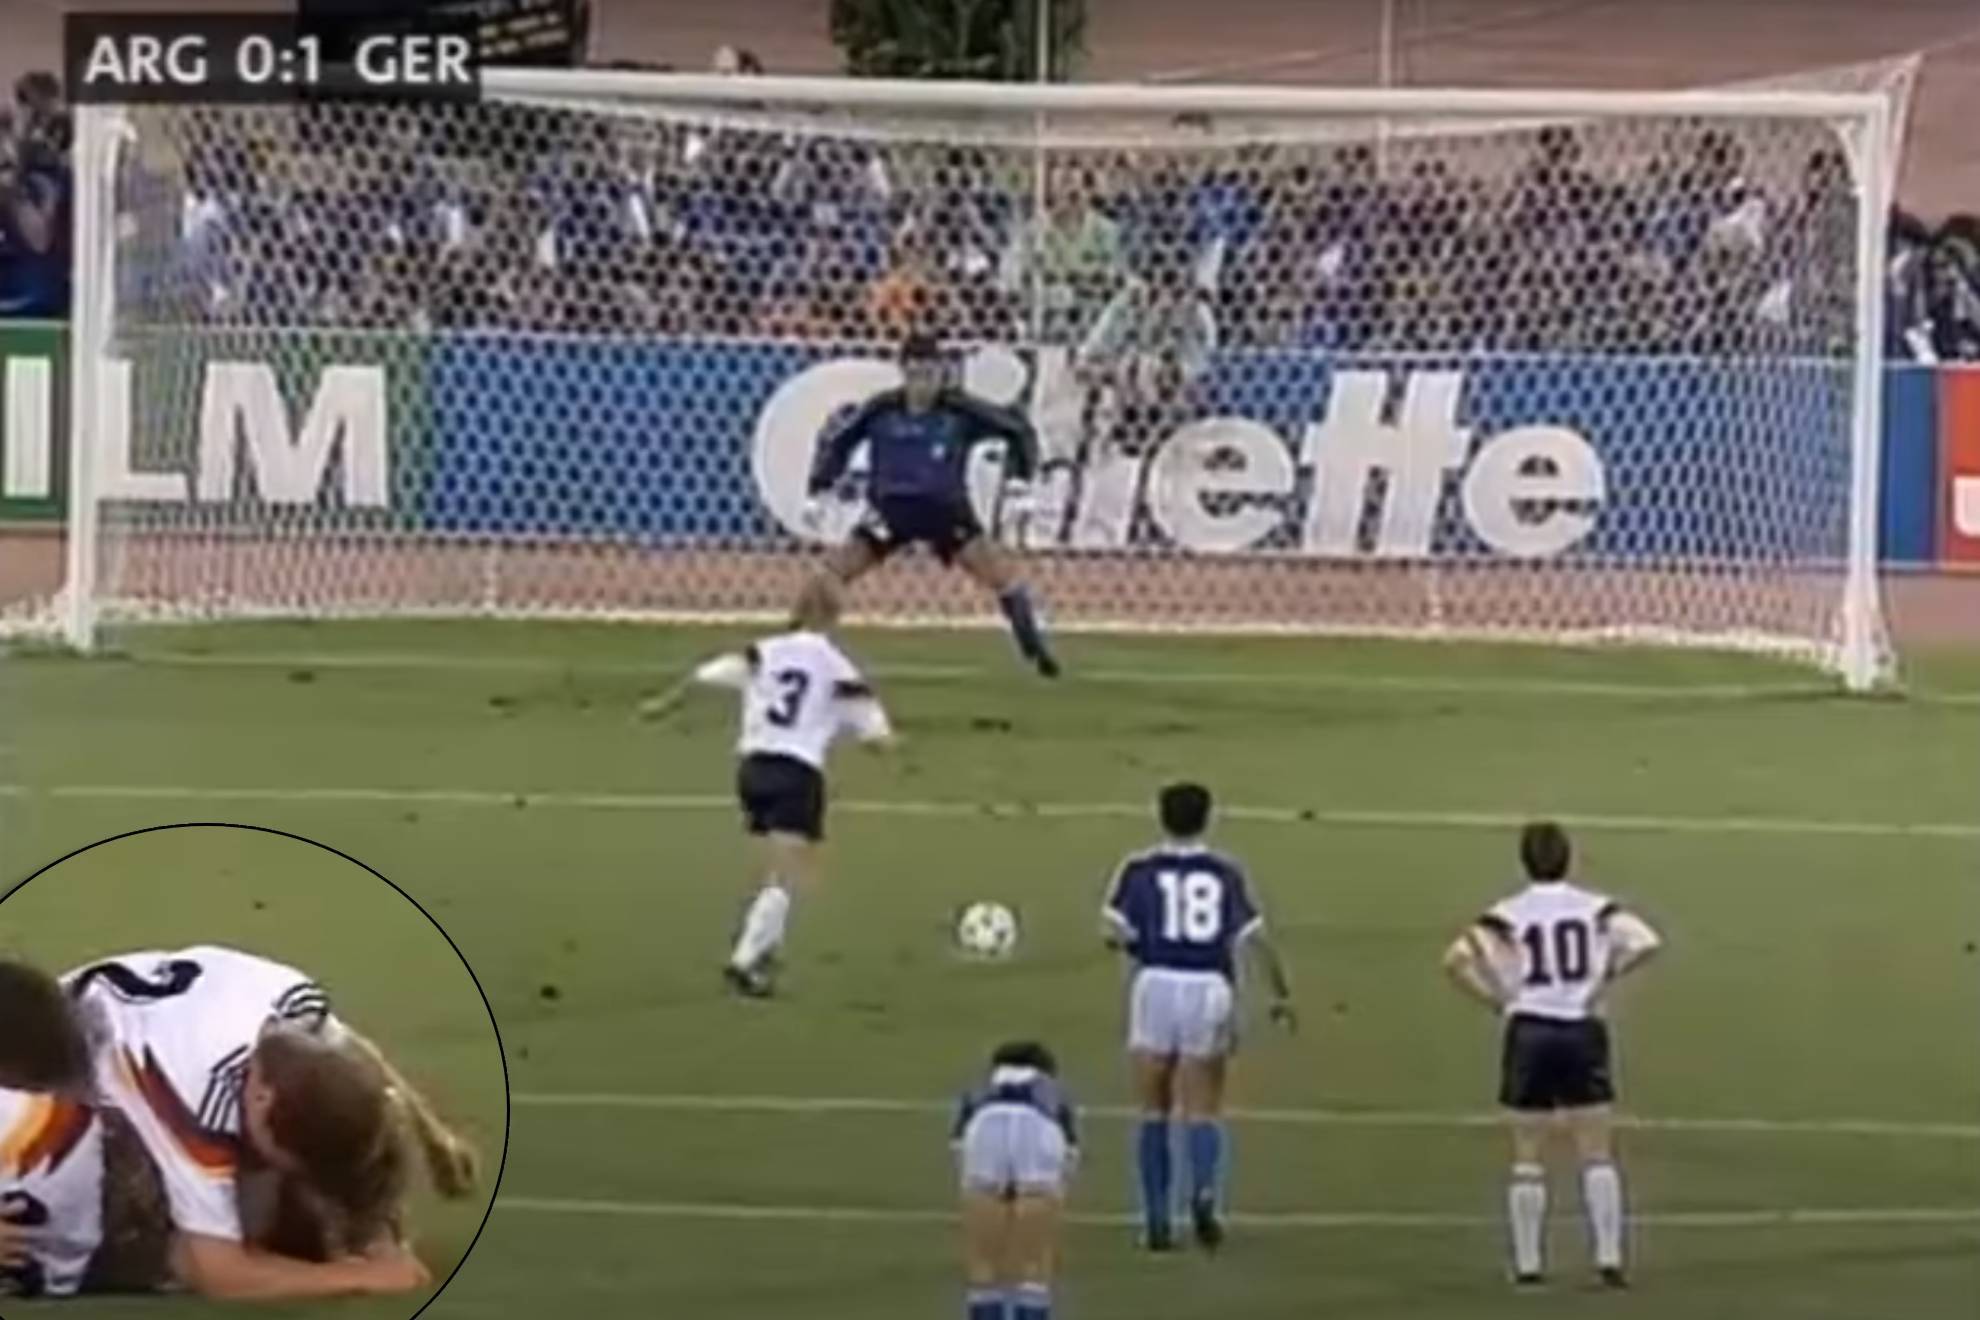 El penalti mentiroso de Brehme que hizo a Alemania campeona del mundo... y su confesión 16 años después